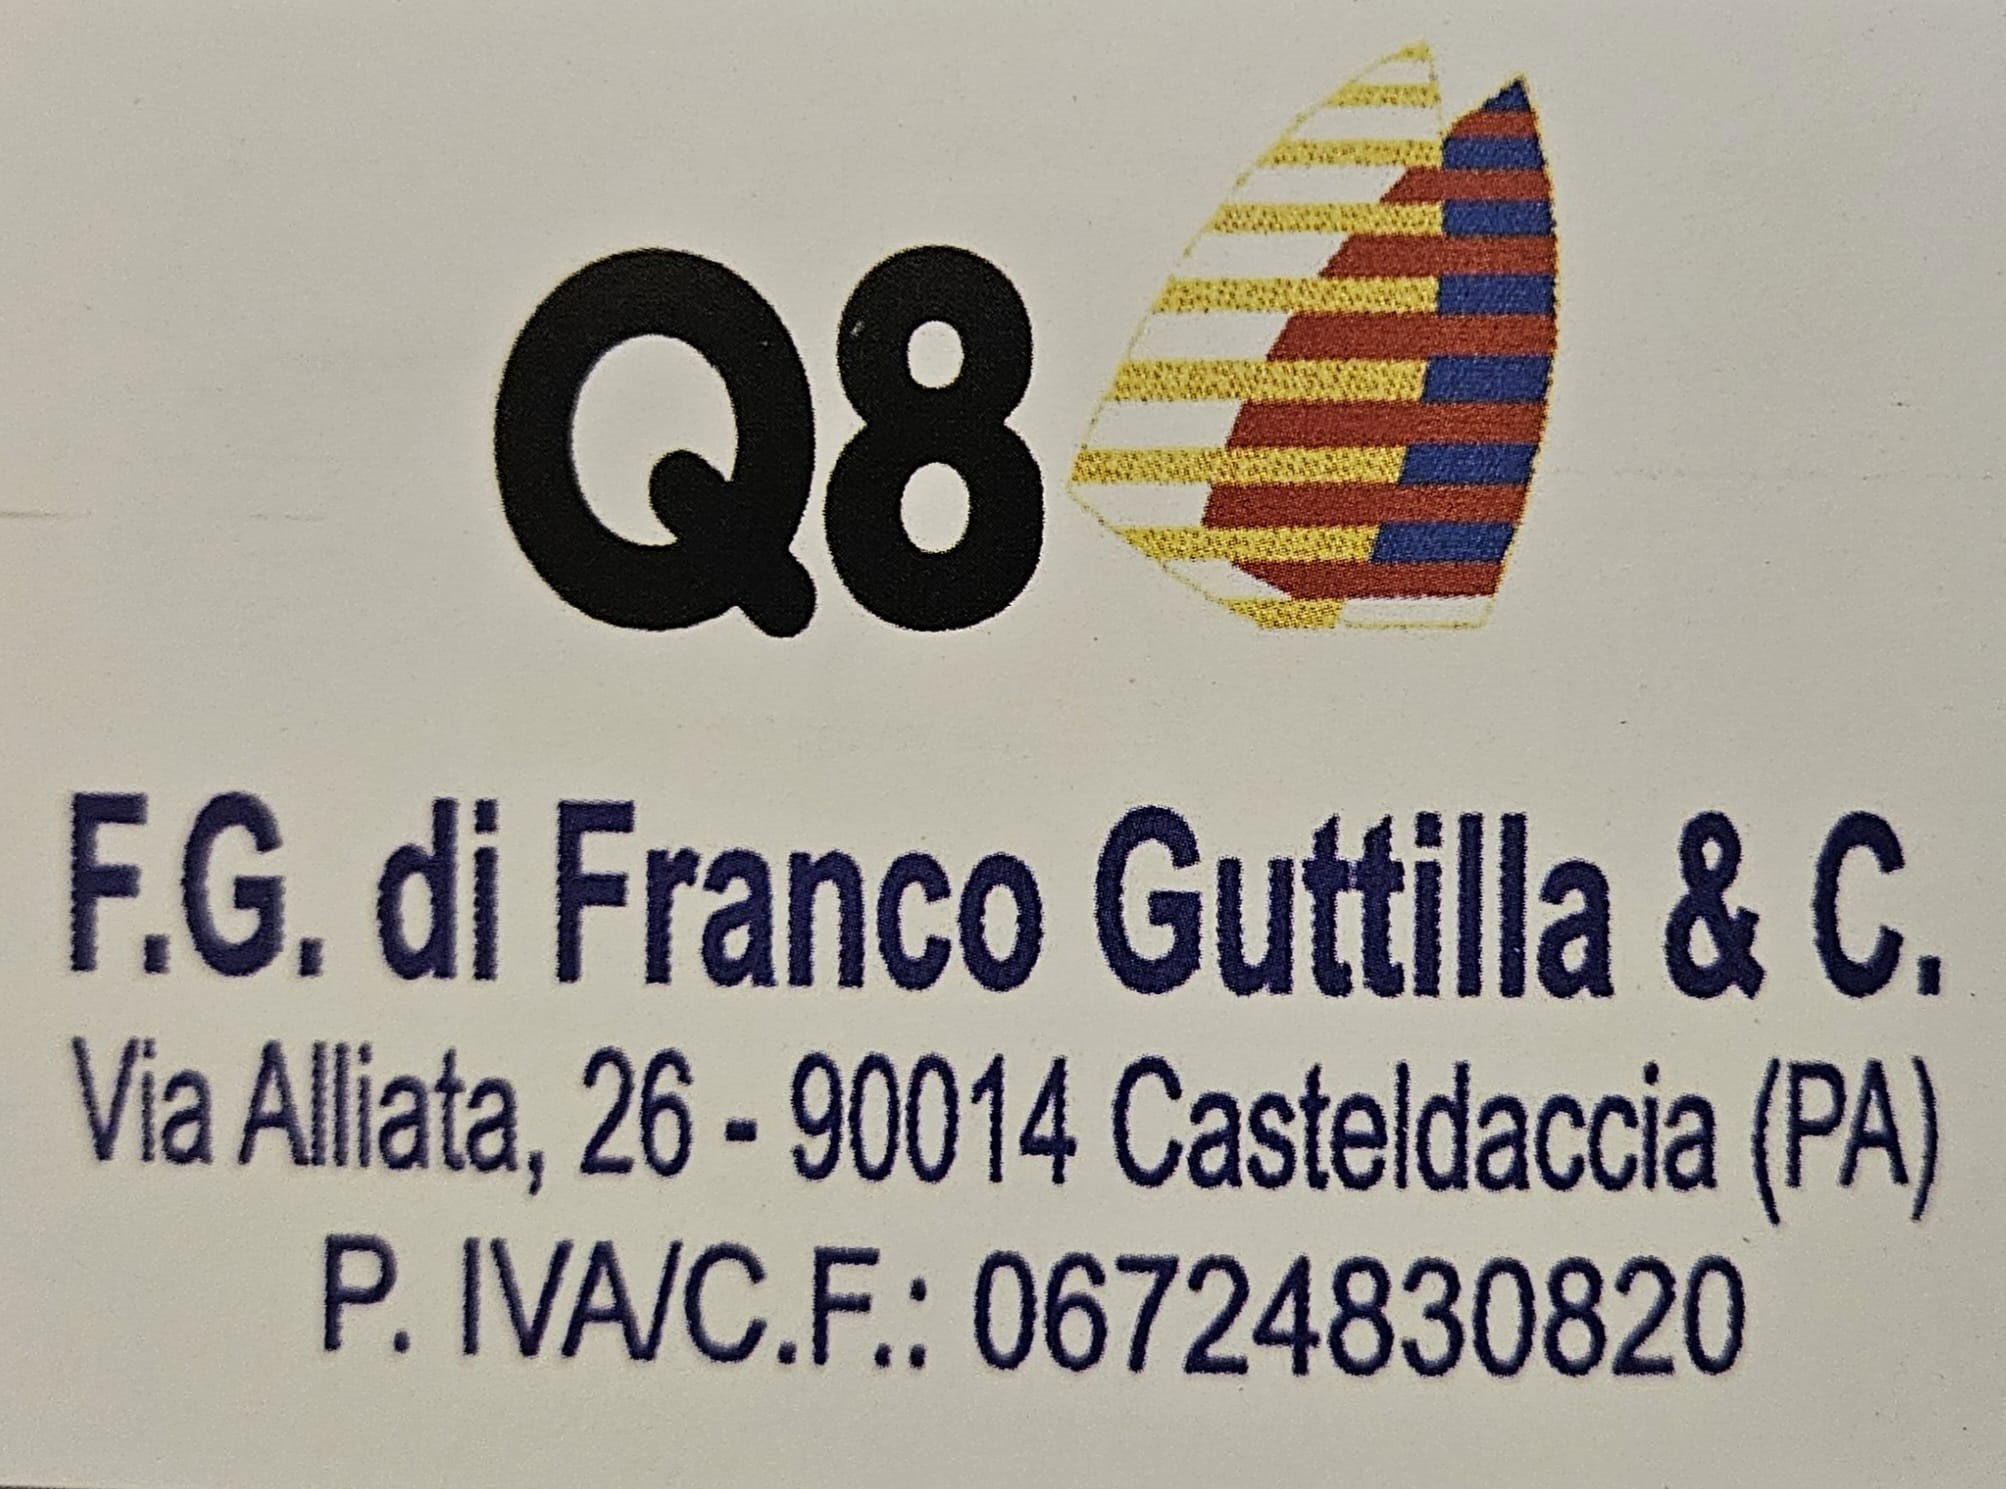 G8 di Franco Guttilla